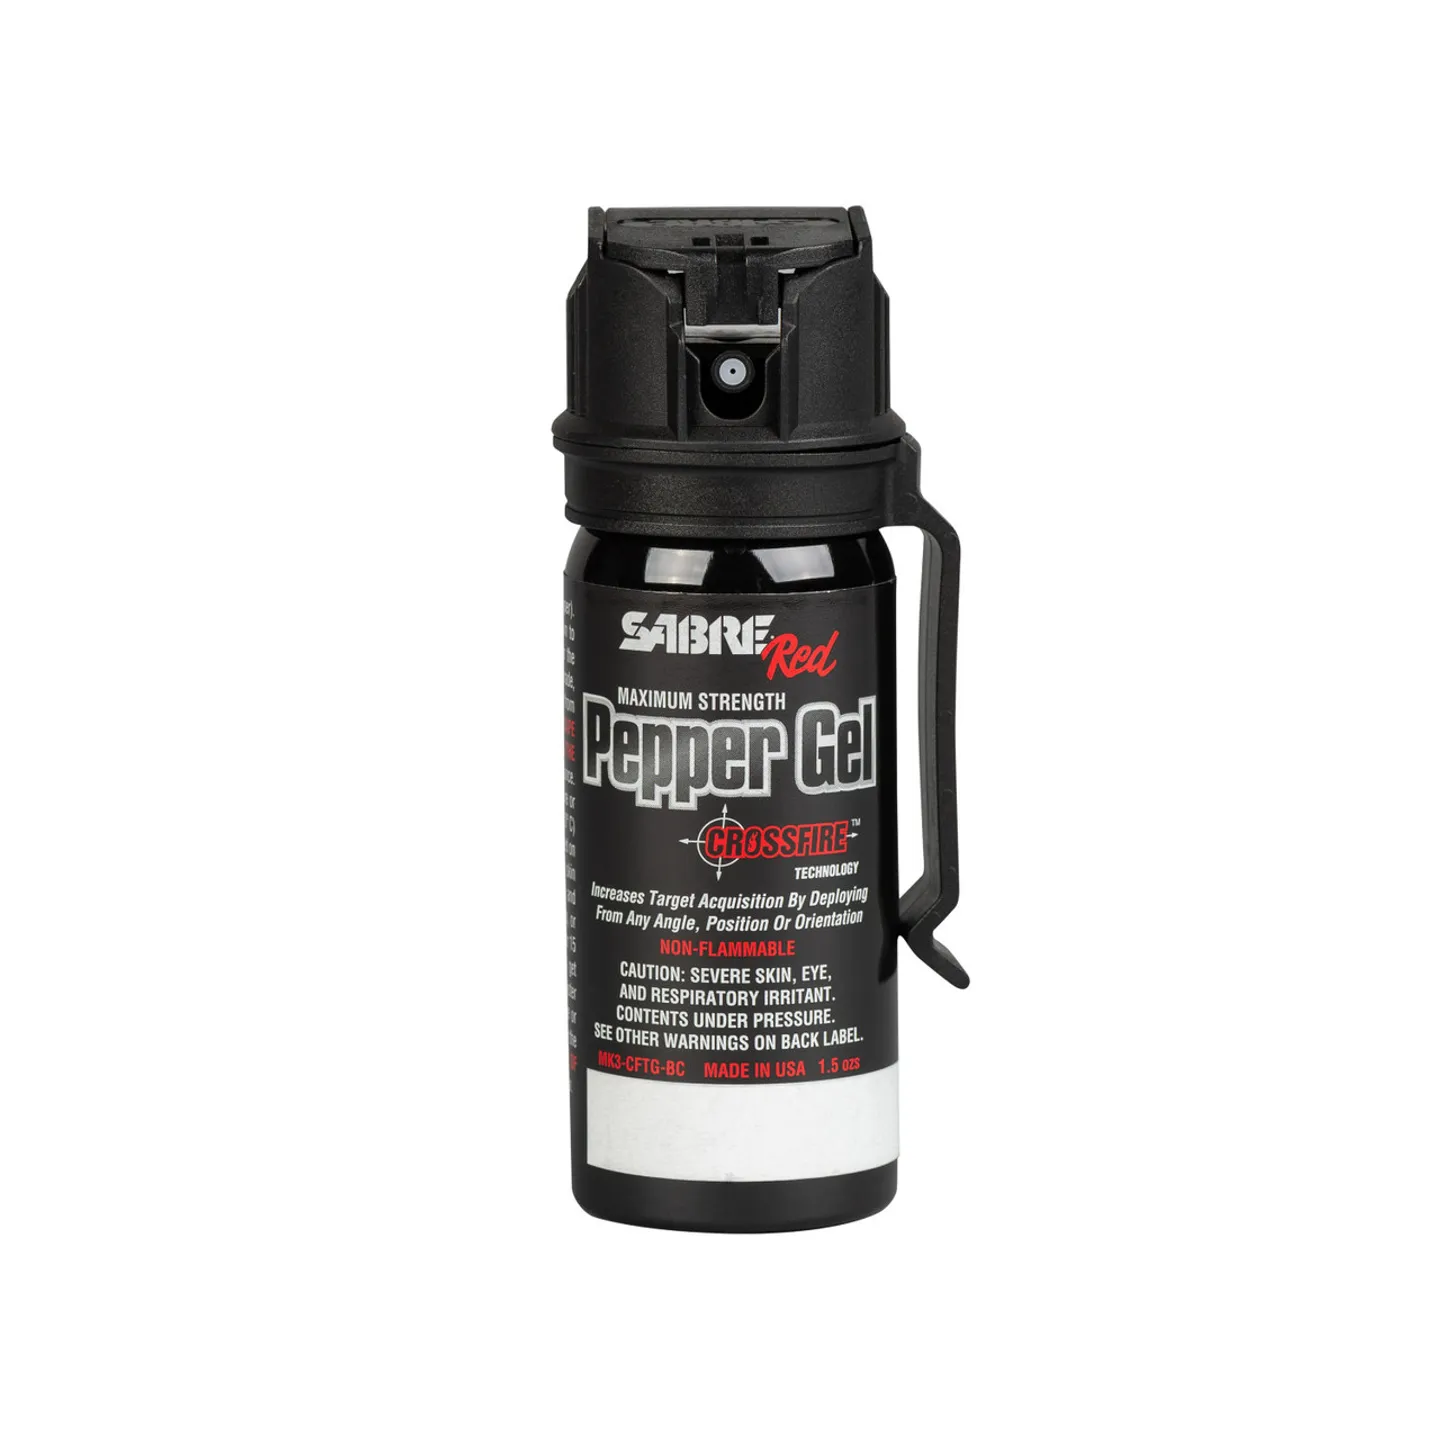 Spray lacrimógeno - Spray de autodefensa potente 2 en 1 MK3 Crossfire - Contenido de 54 ml